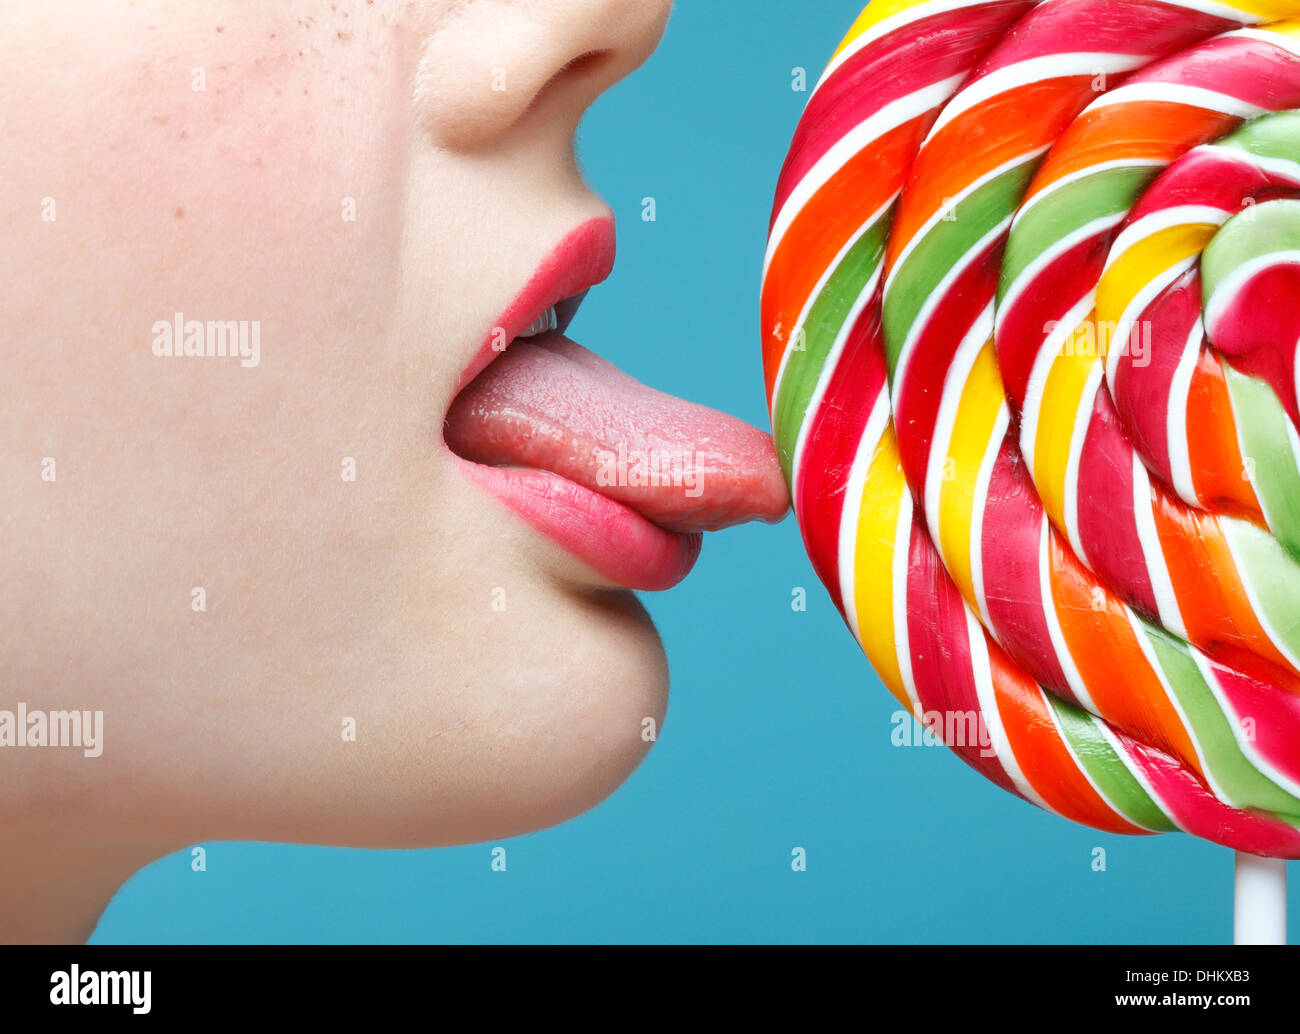 Licking sugarplum Stock Photo